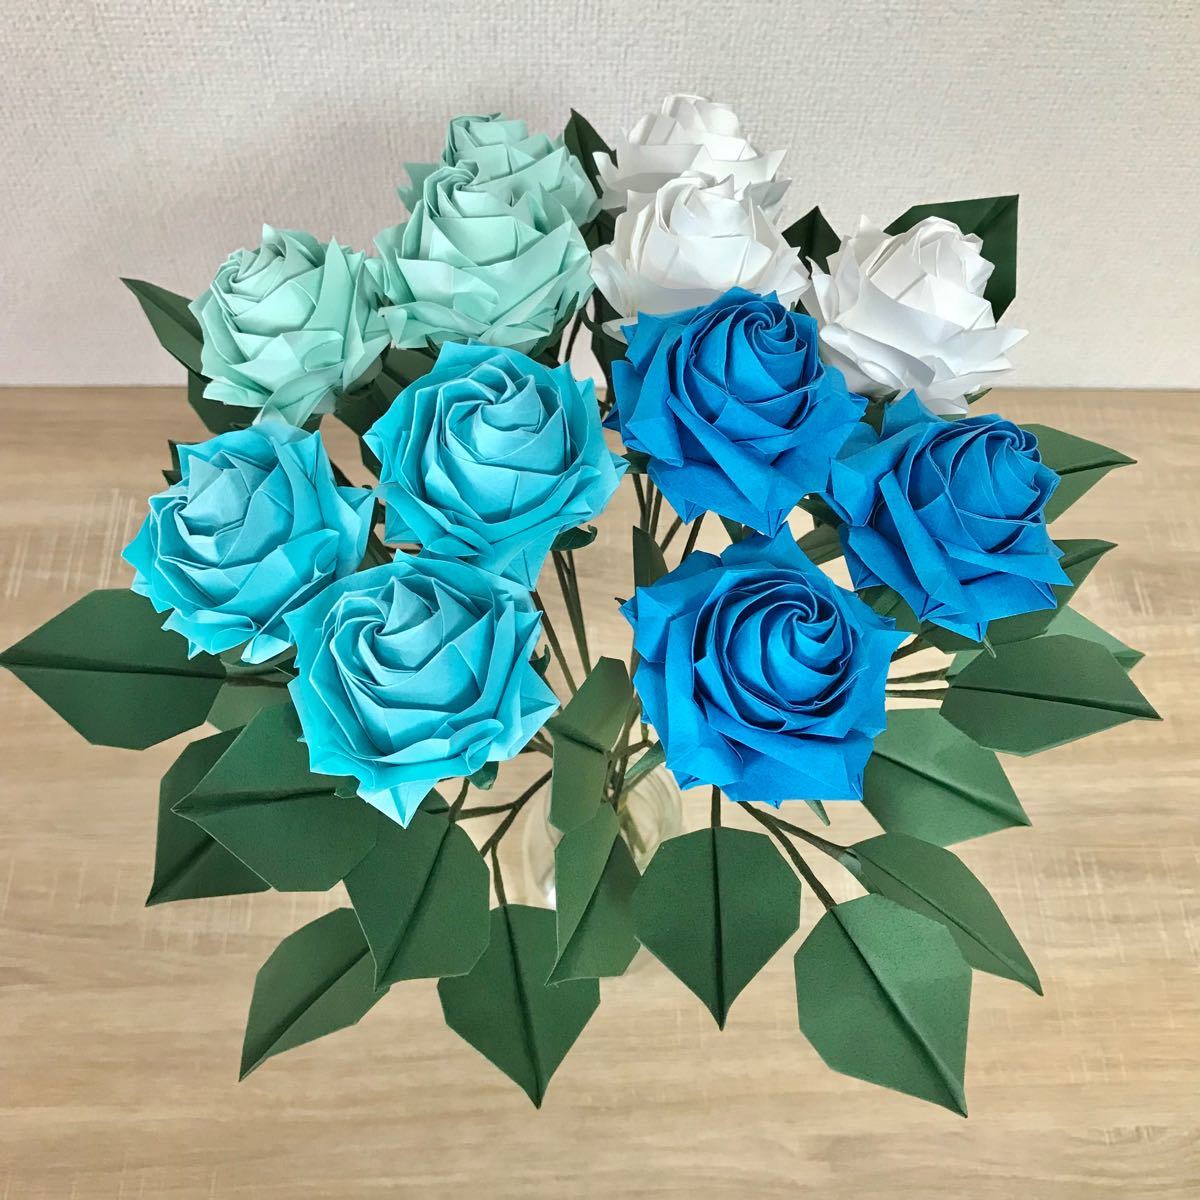 Paypayフリマ オーダーメイド承ります 折り紙のバラ花束 ブルー系12本セット ダズンローズ スワッグ ブーケ フラワーアレンジメント